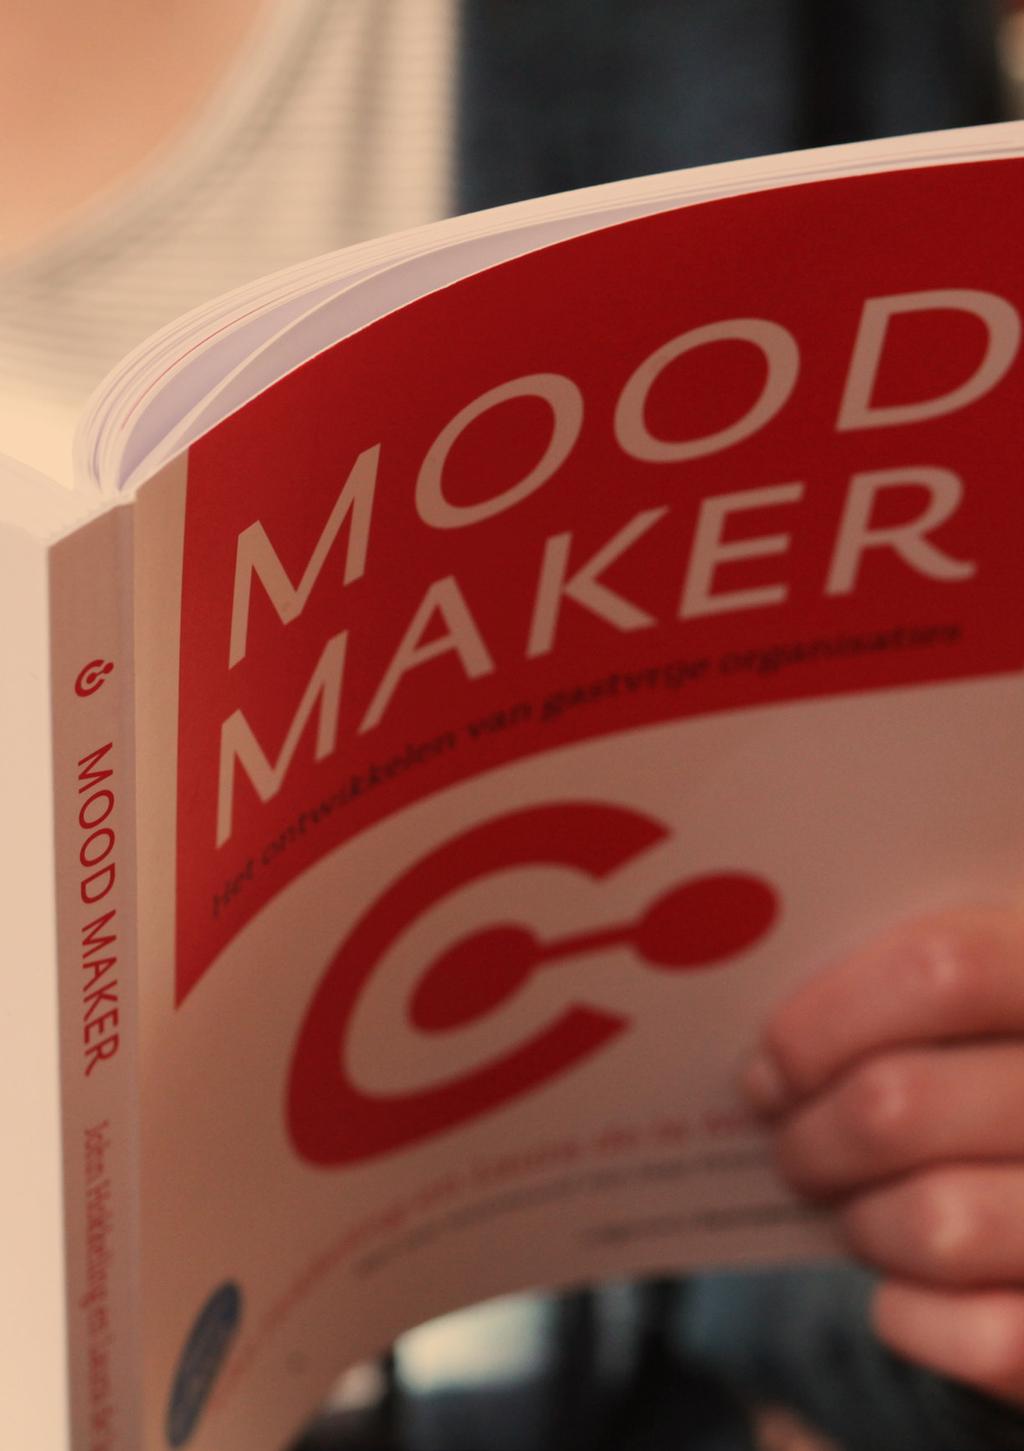 MOOD MAKER FILOSOFIE MOOD MAKER BOEK In het boek Mood Maker - het ontwikkelen van gastvrije organisaties schrijft John Hokkeling: Op mijn zoektocht naar literatuur over het onderwerp Gastvrijheid